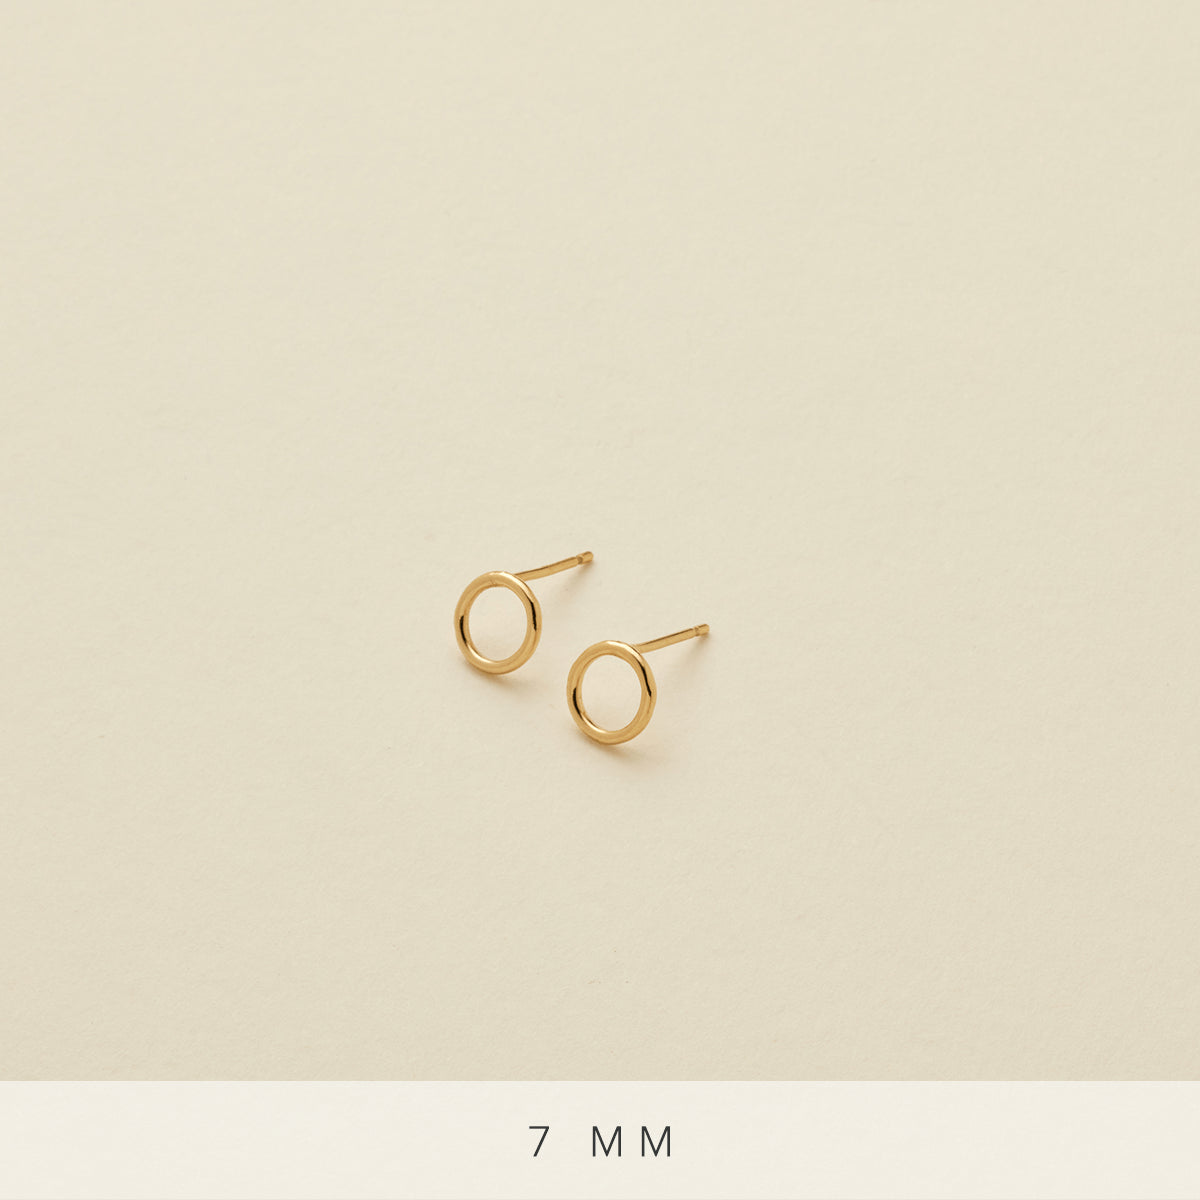 Circlet Earrings Gold Filled / 7mm Earring